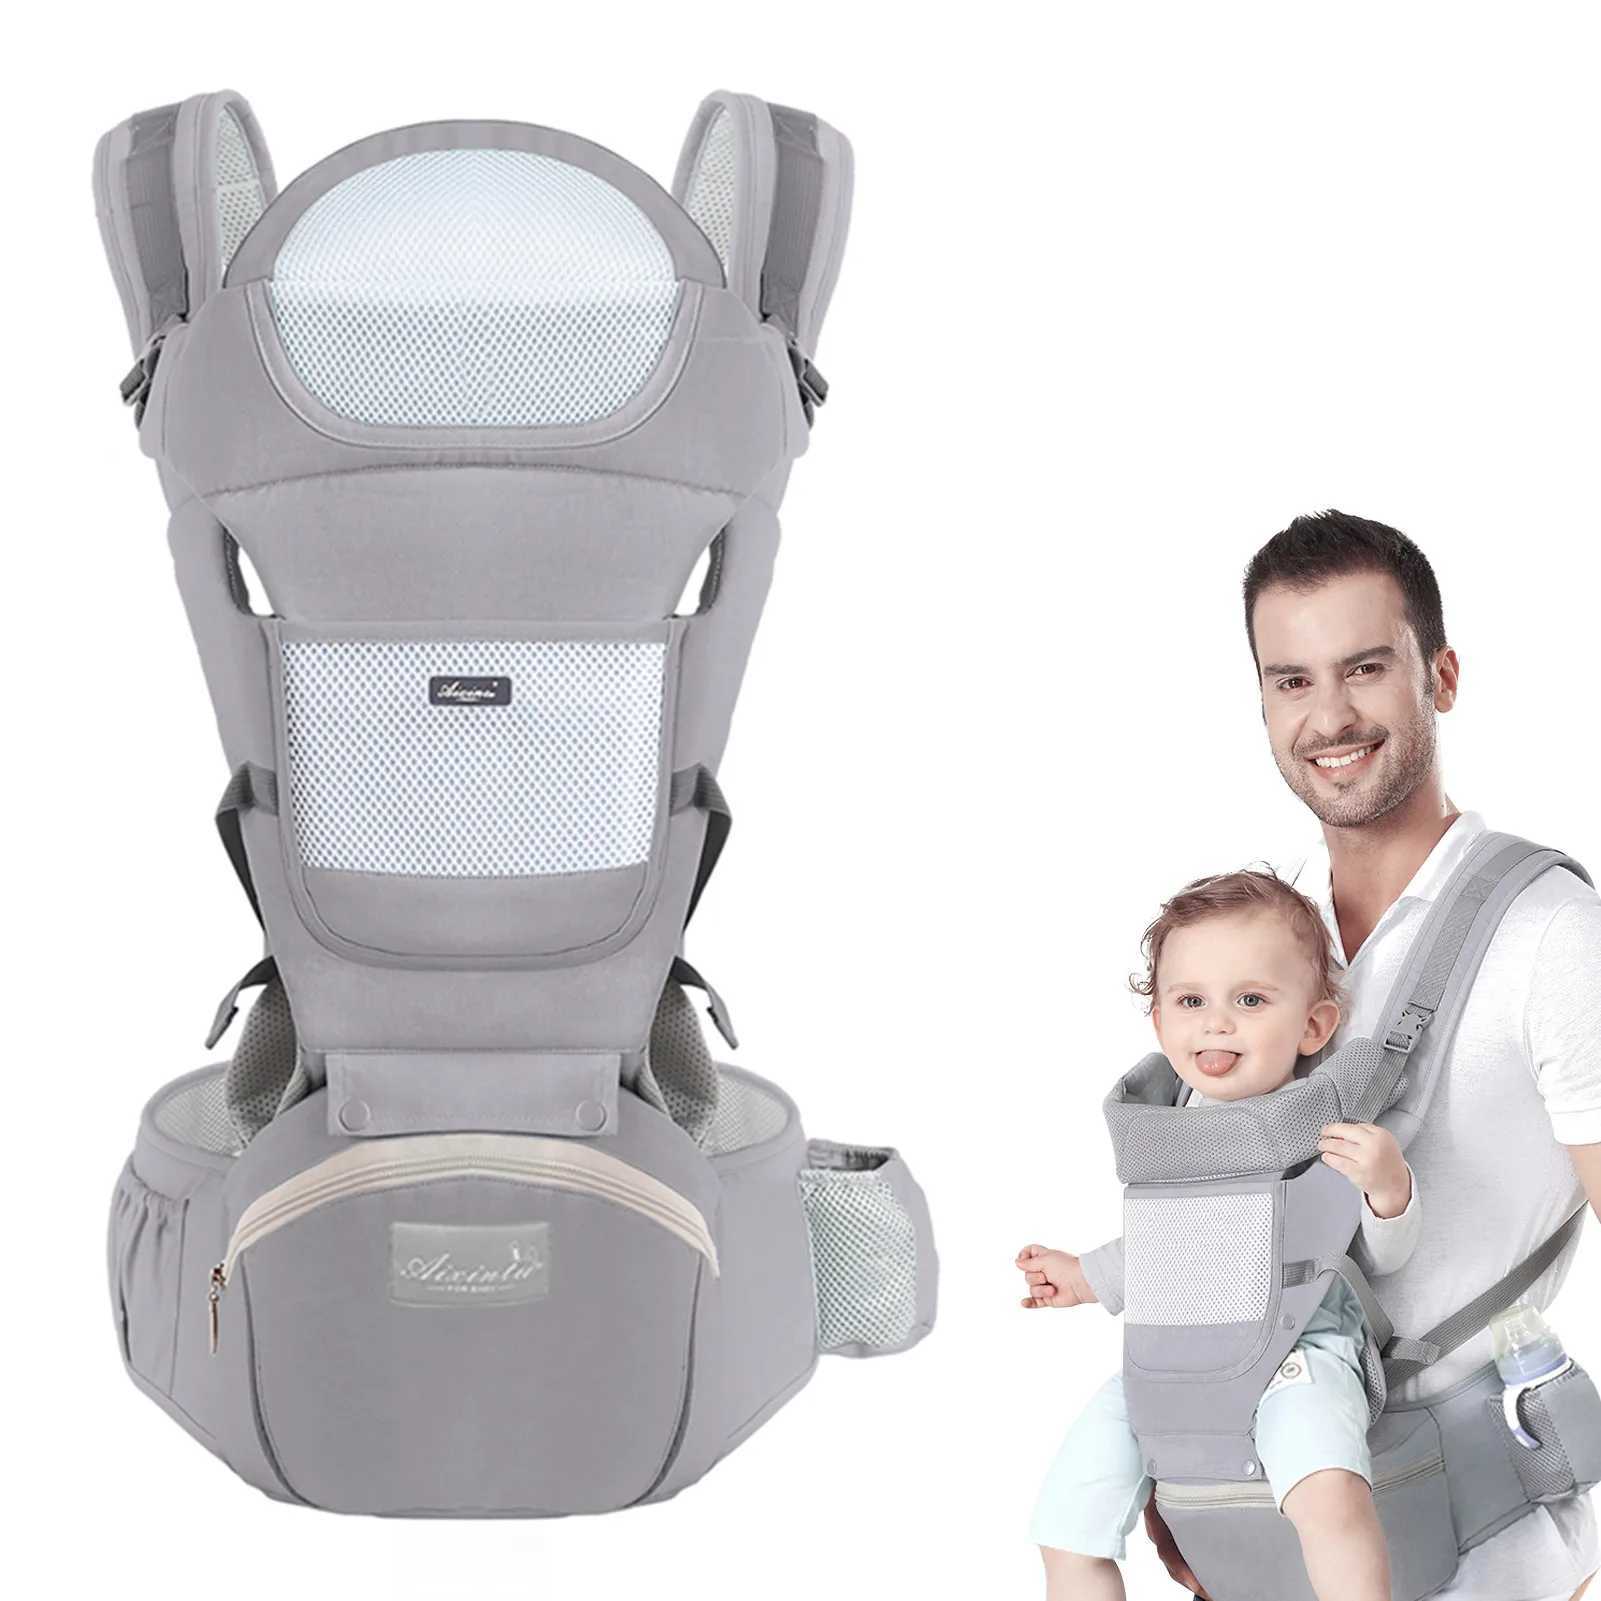 As transportadoras lingam as mochilas portador de bebê Ergonomicinfant multifuncional da cintura